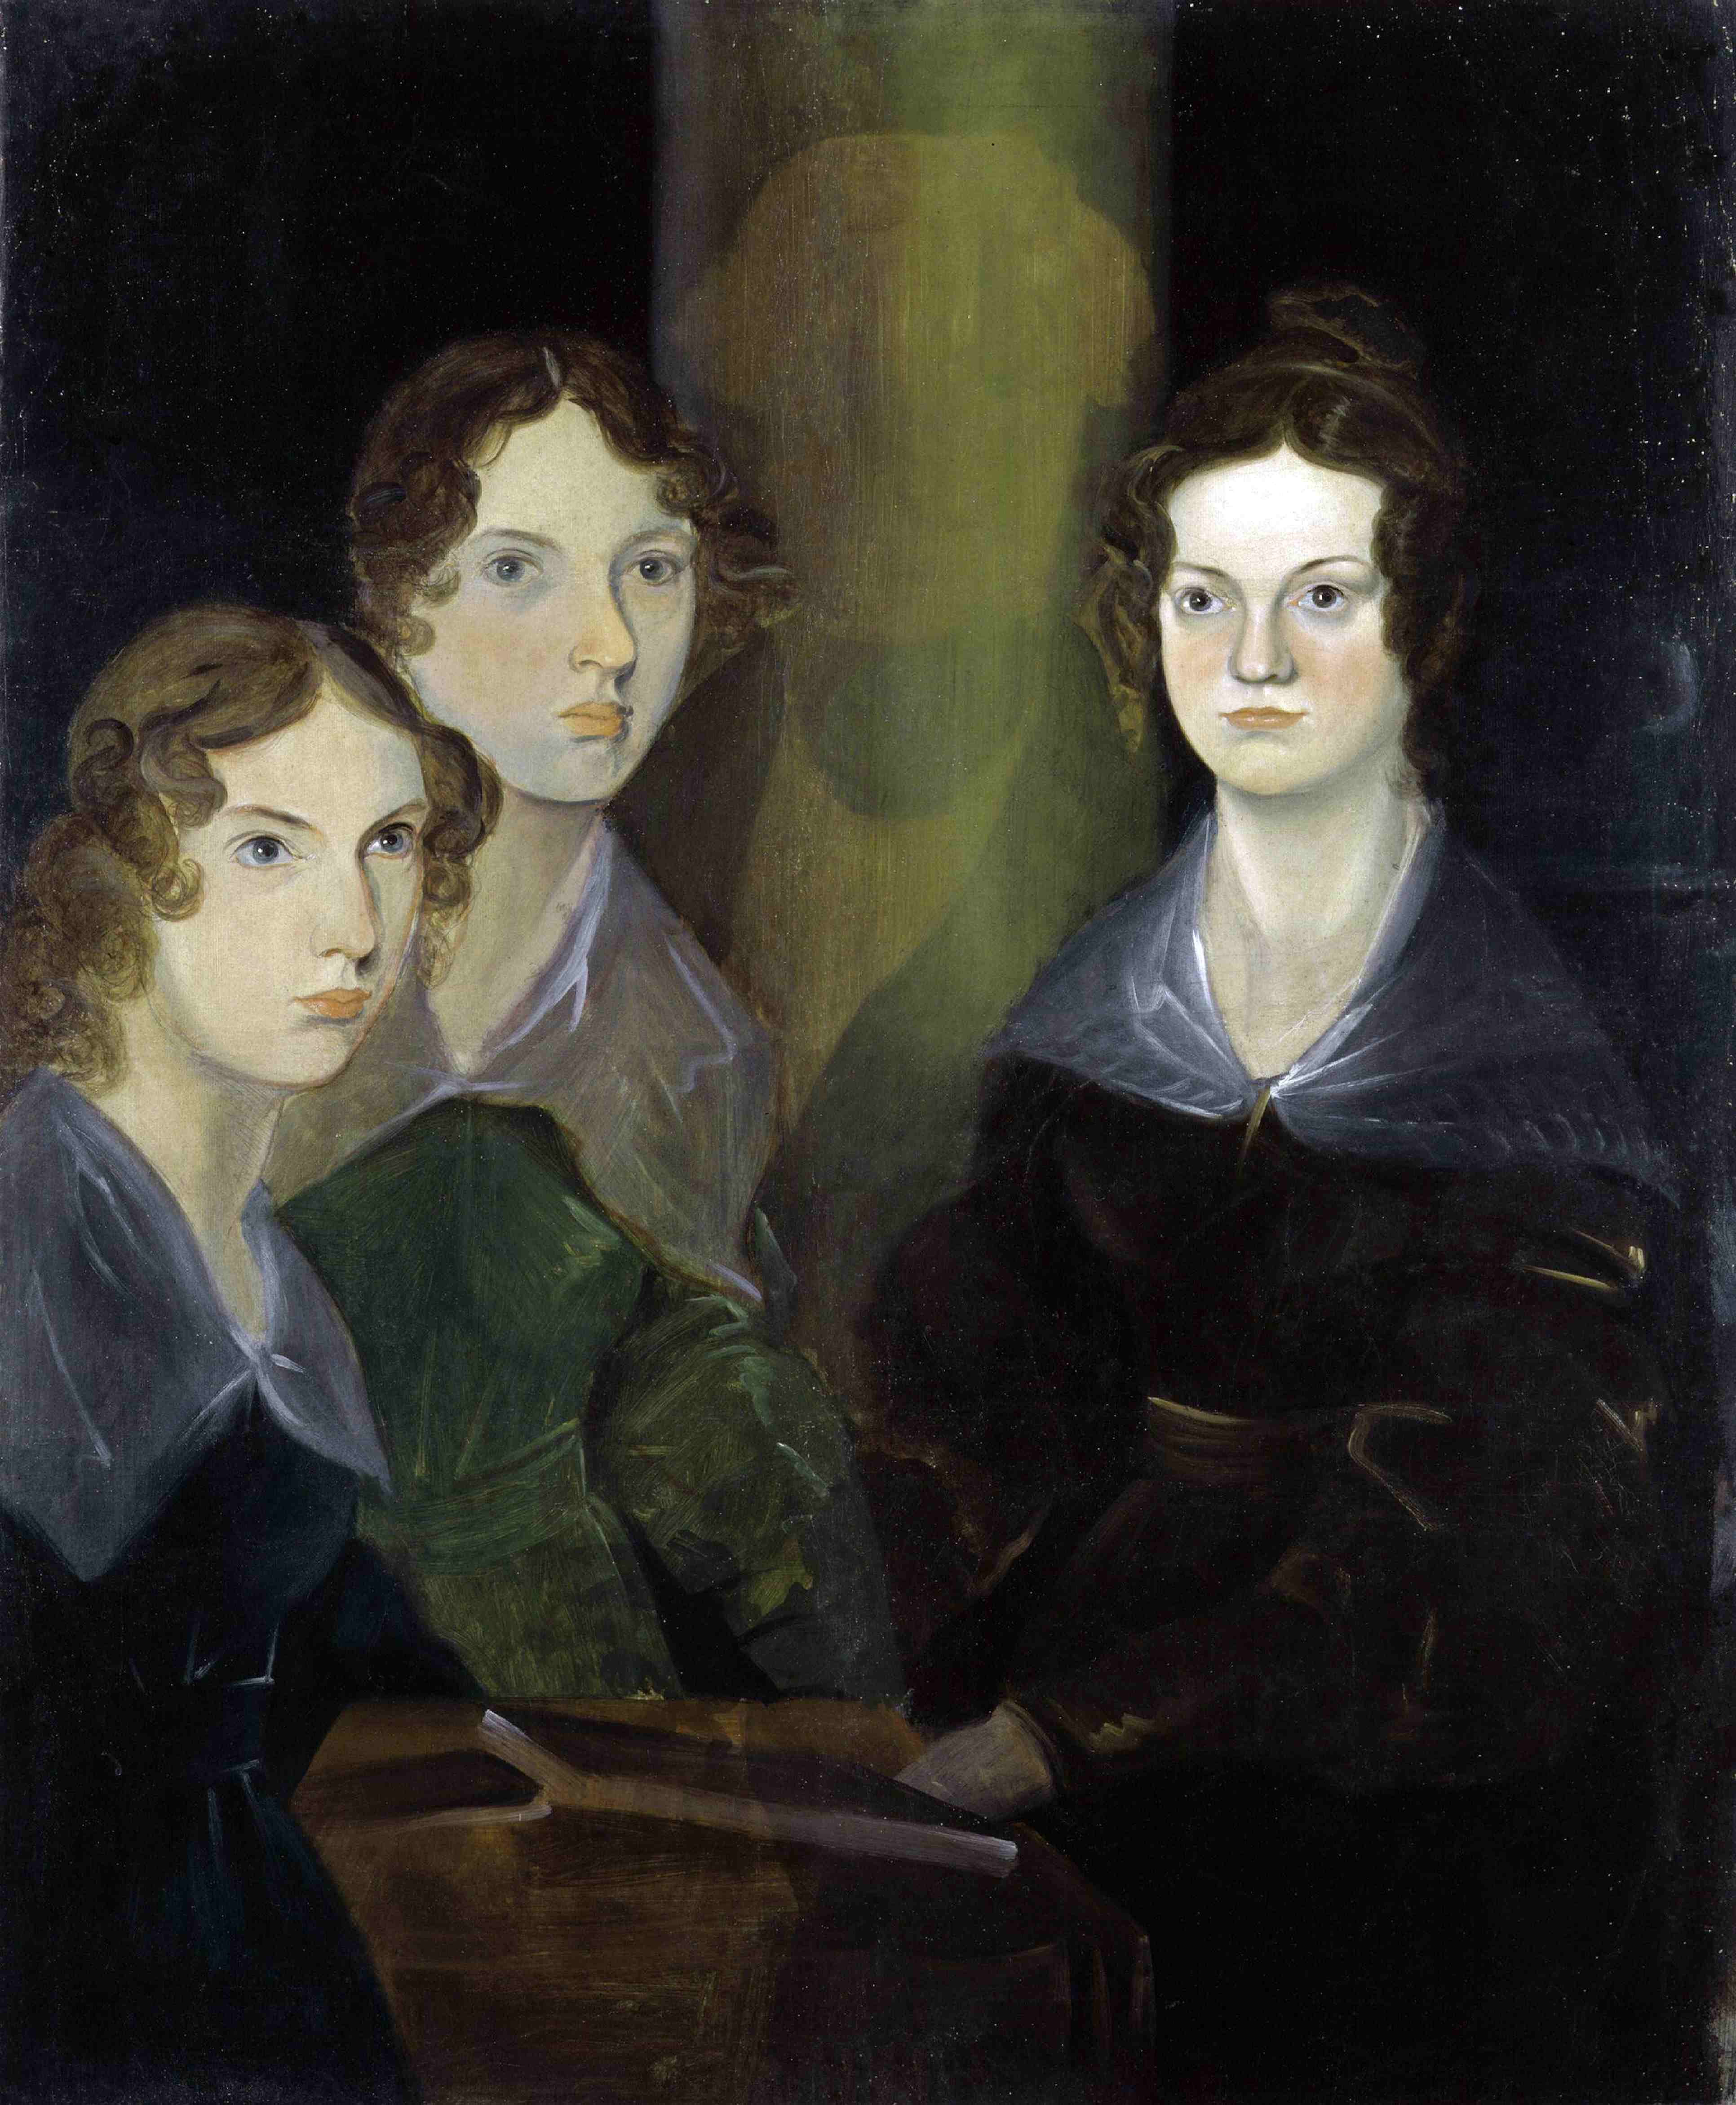 Le tre sorelle Brontë: Charlotte, Emily e Anne, si firmavano rispettivamente Currer, Ellis e Acton Bell, cioè come tre fratelli scrittori